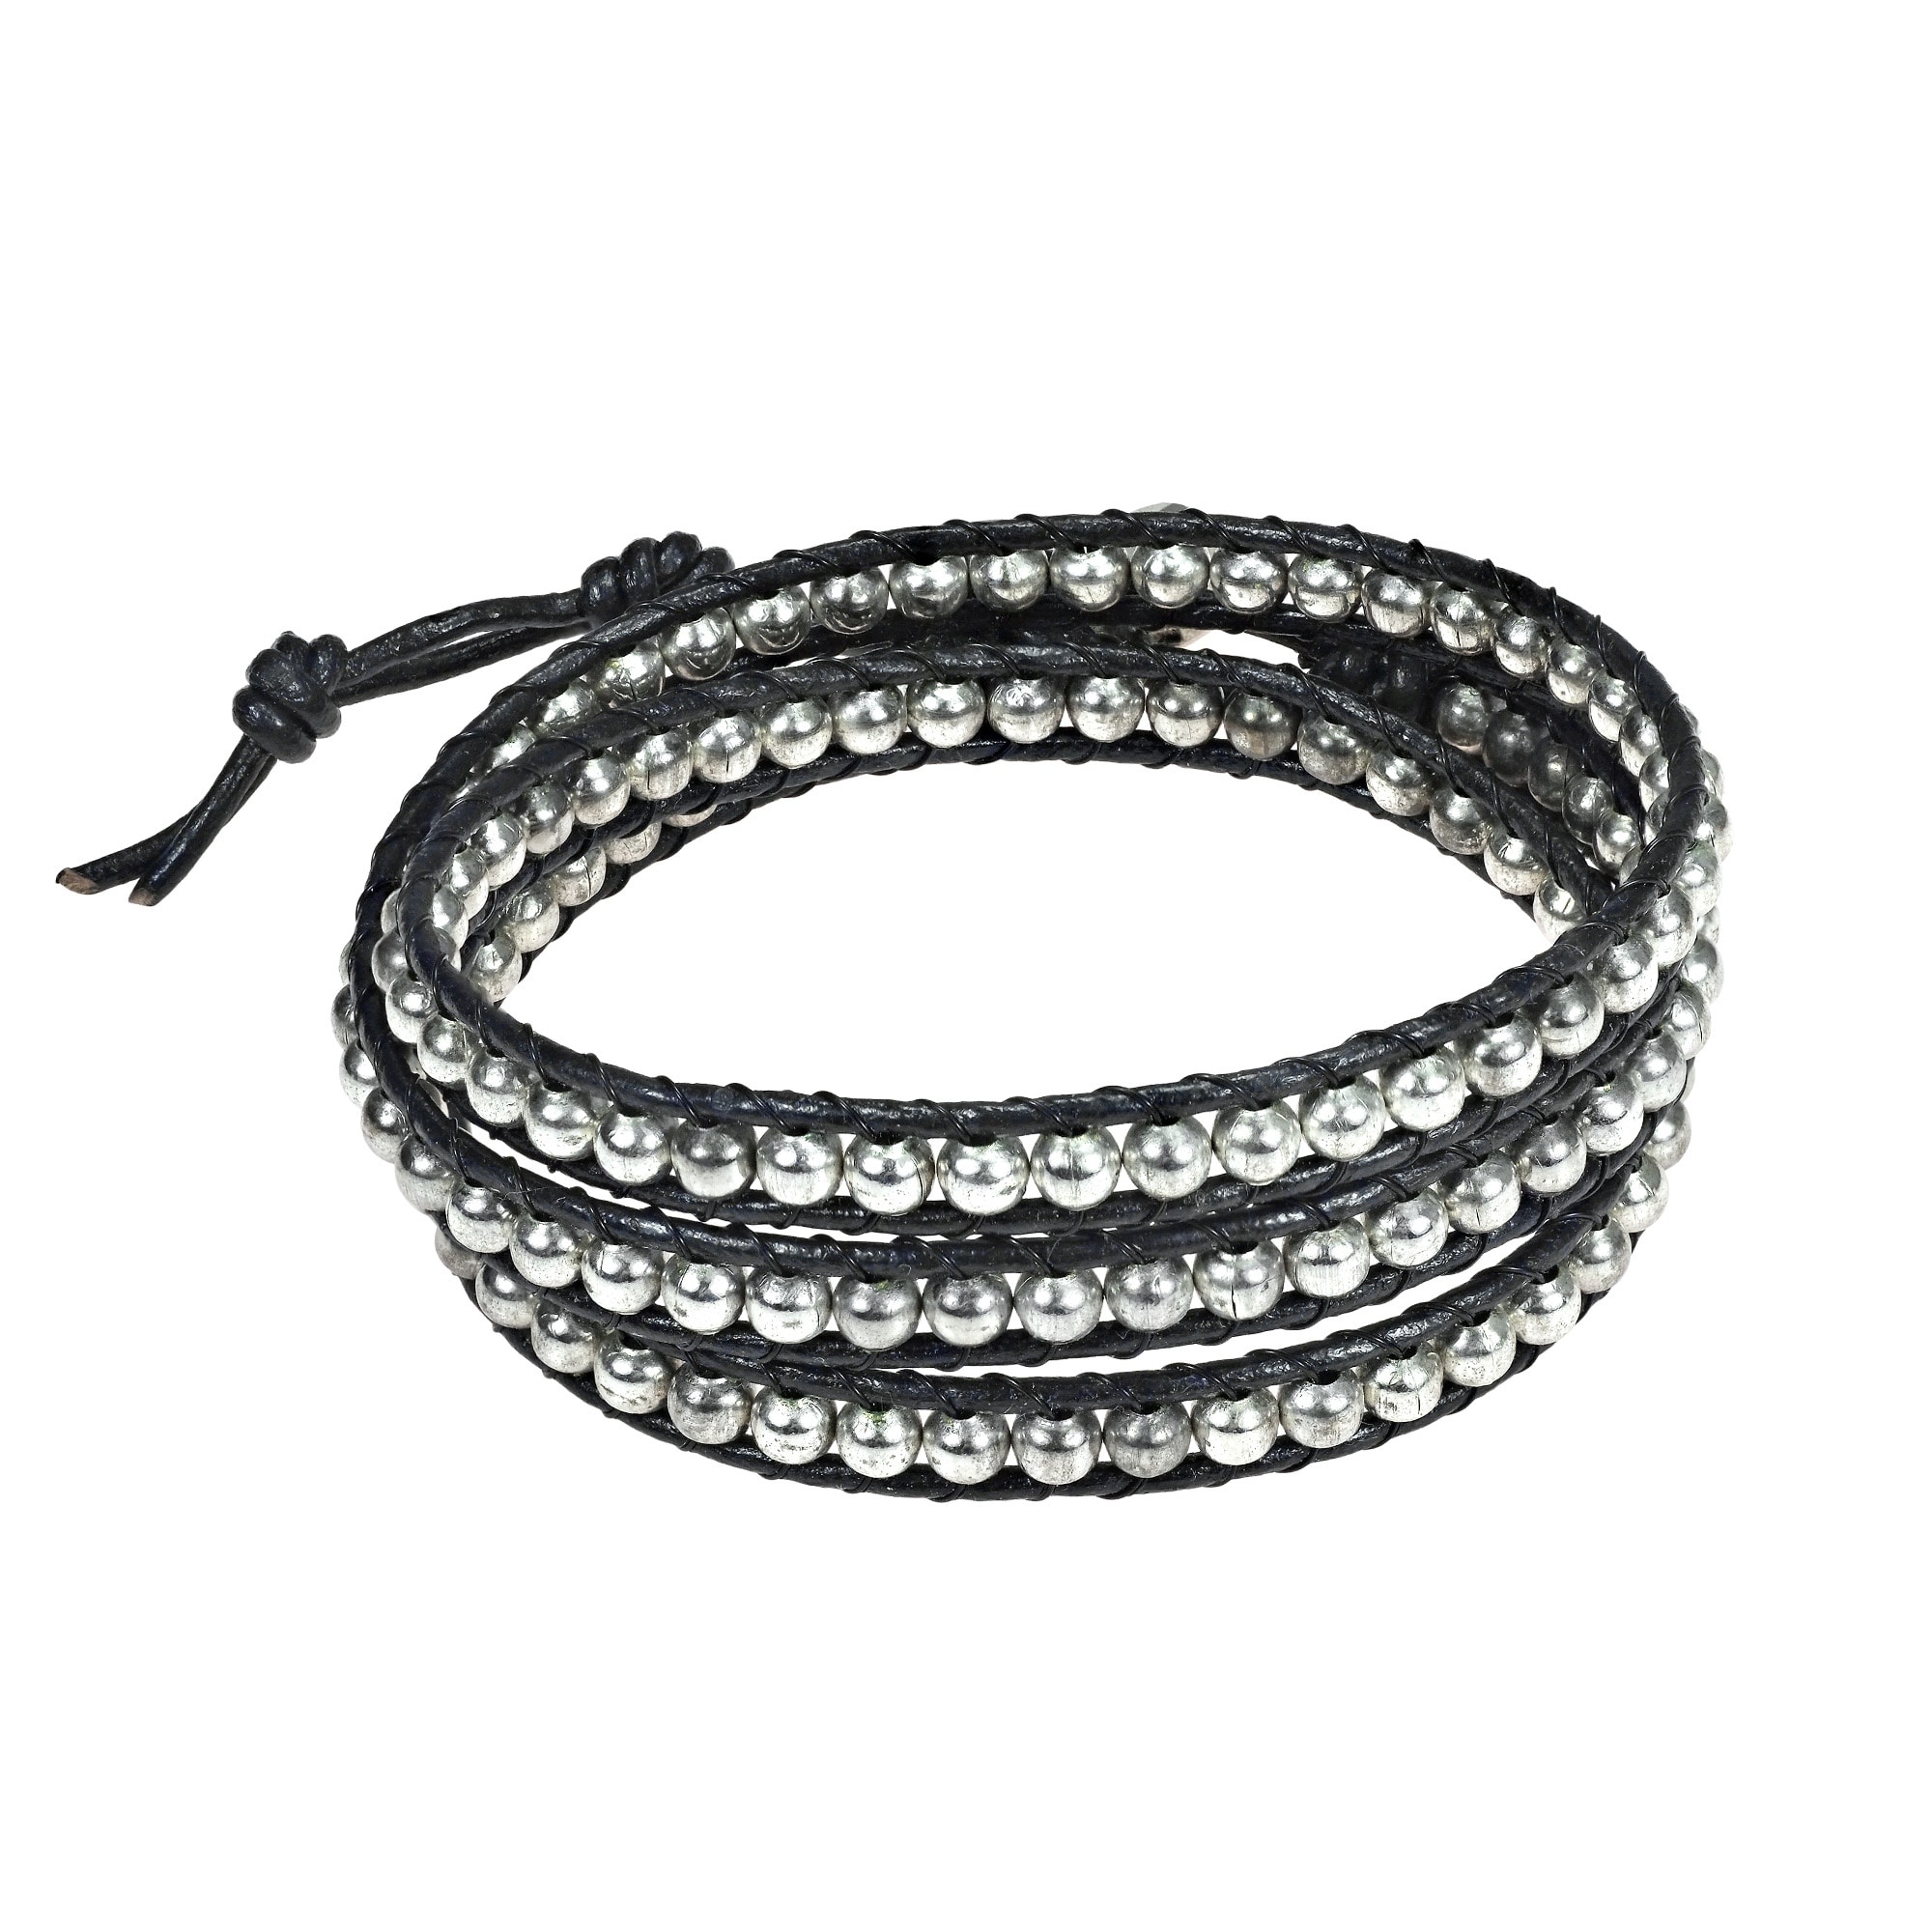 Sublime Metallic Round Beads Triple Wrap Leather Bracelet (Thailand